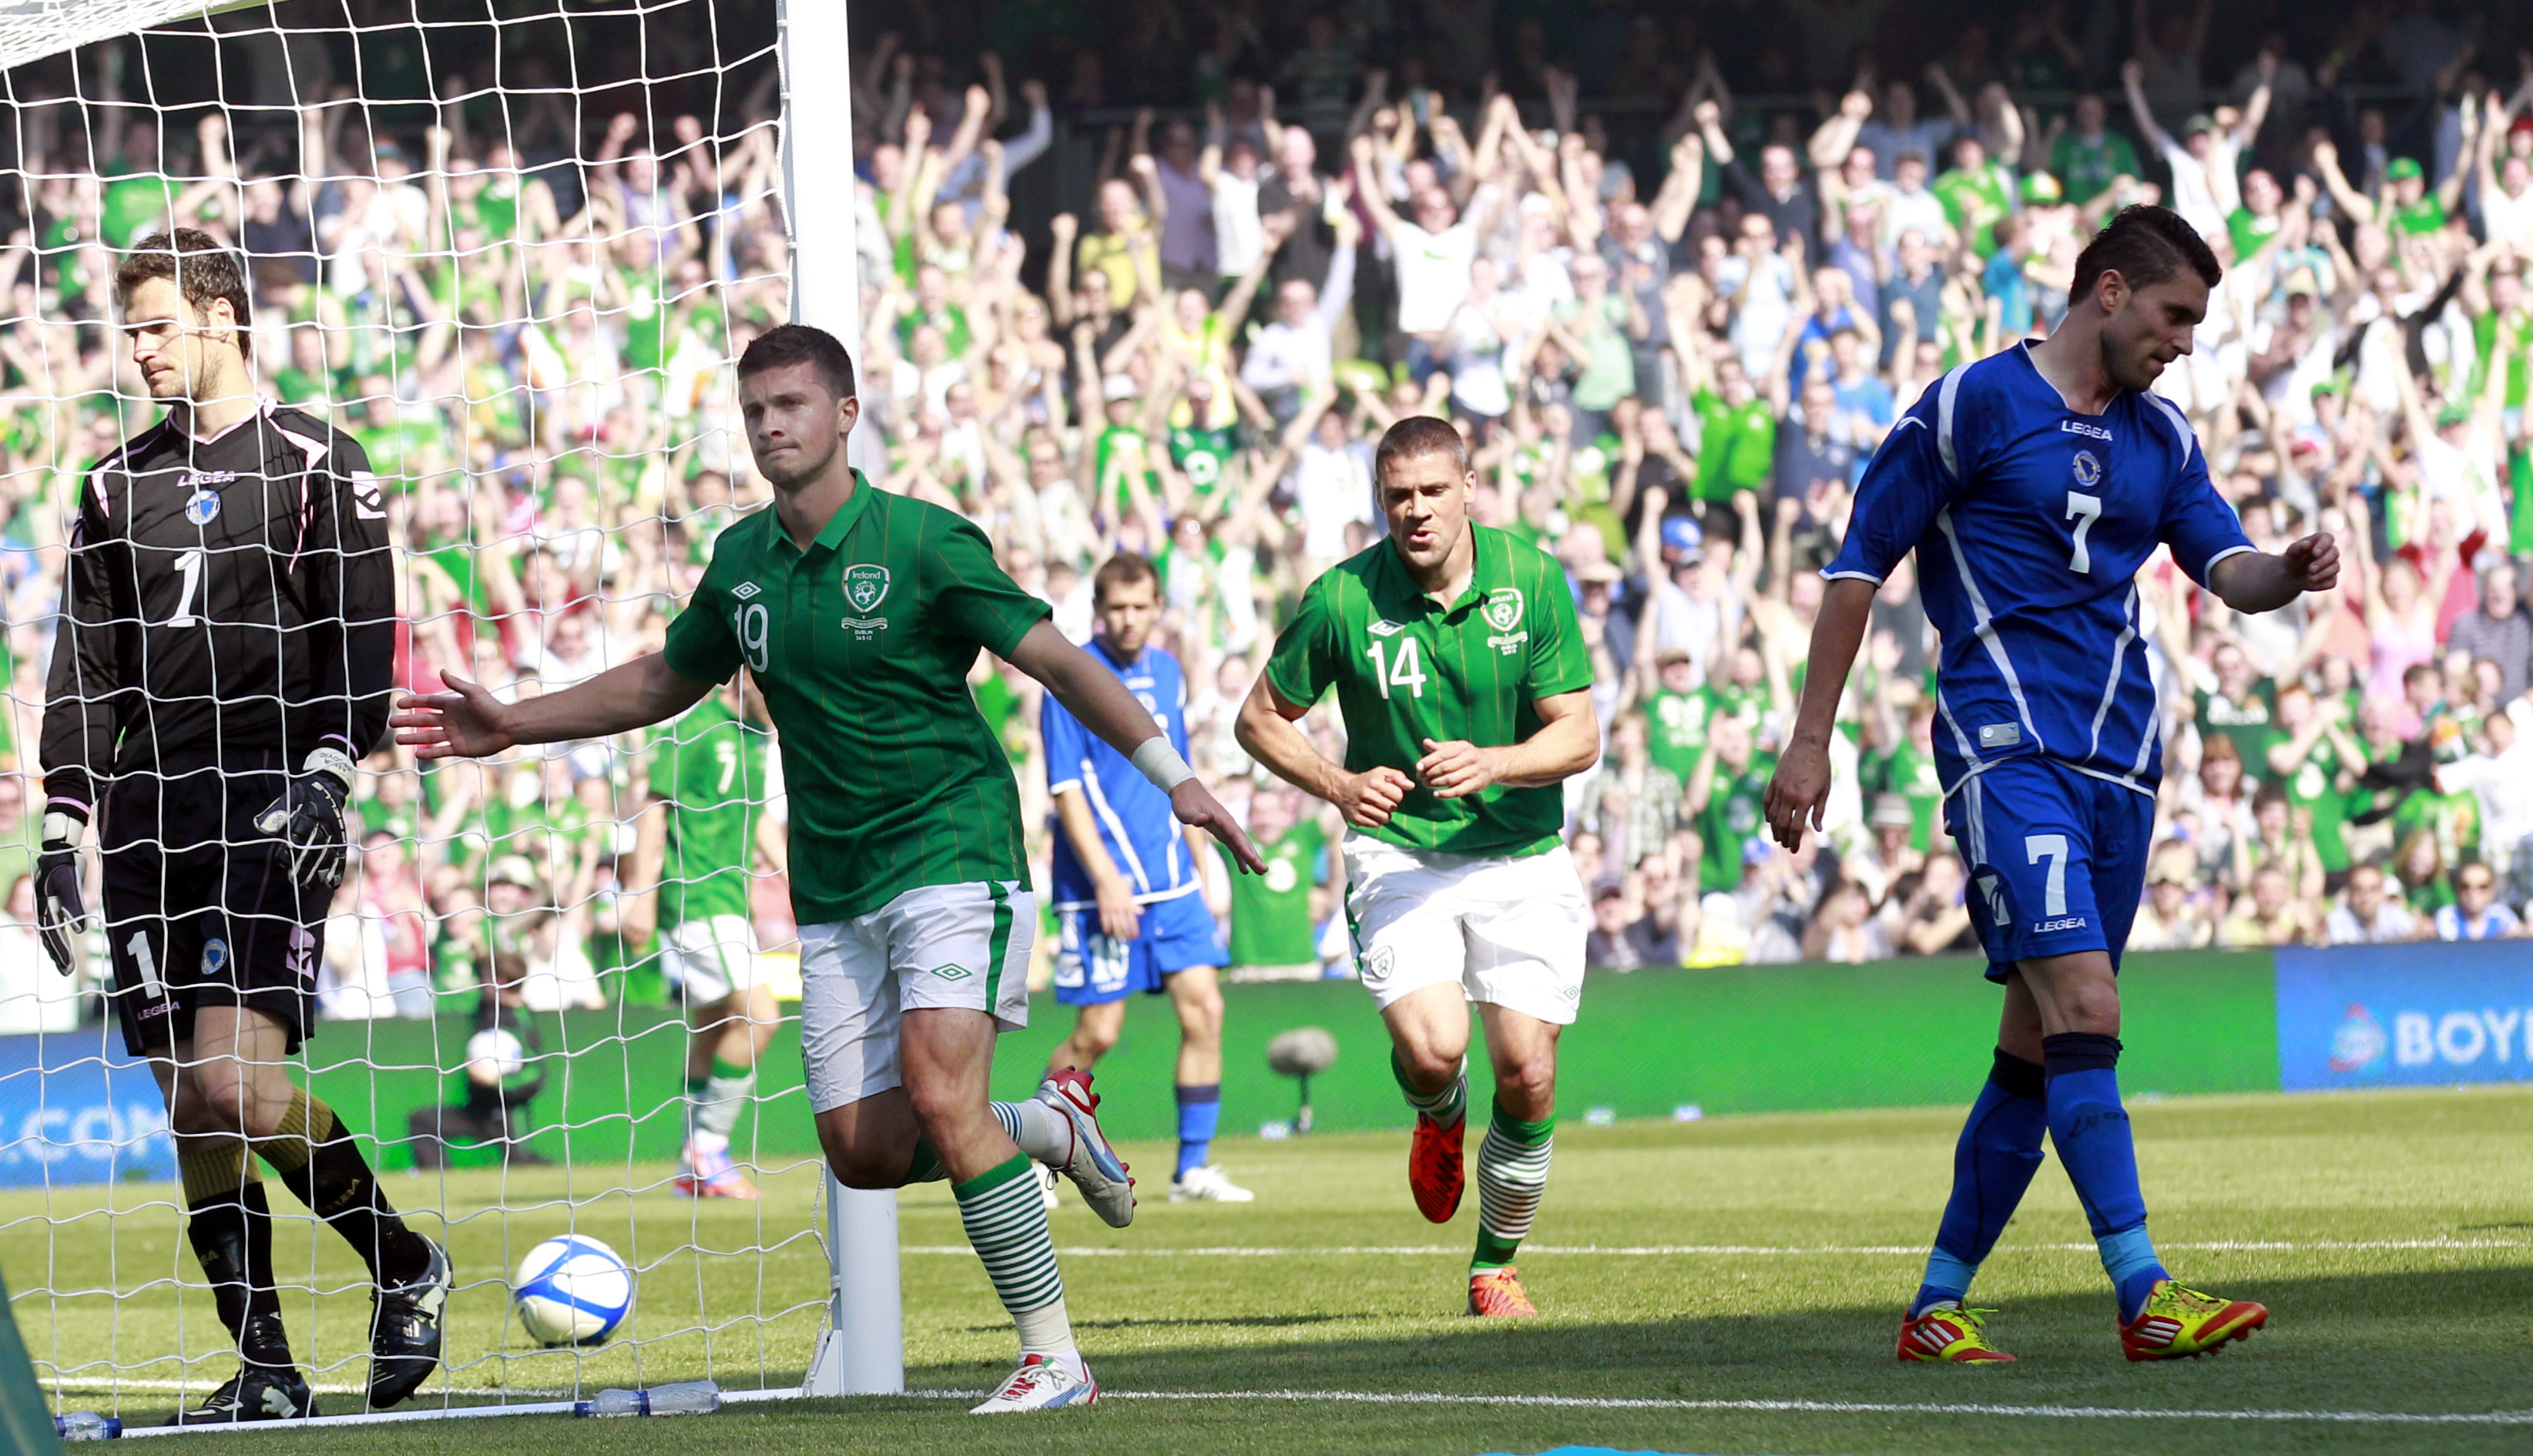 Turina tror favoriterna Kroatien får det tufft mot Irland: "Irland spelar ofta 0–0.